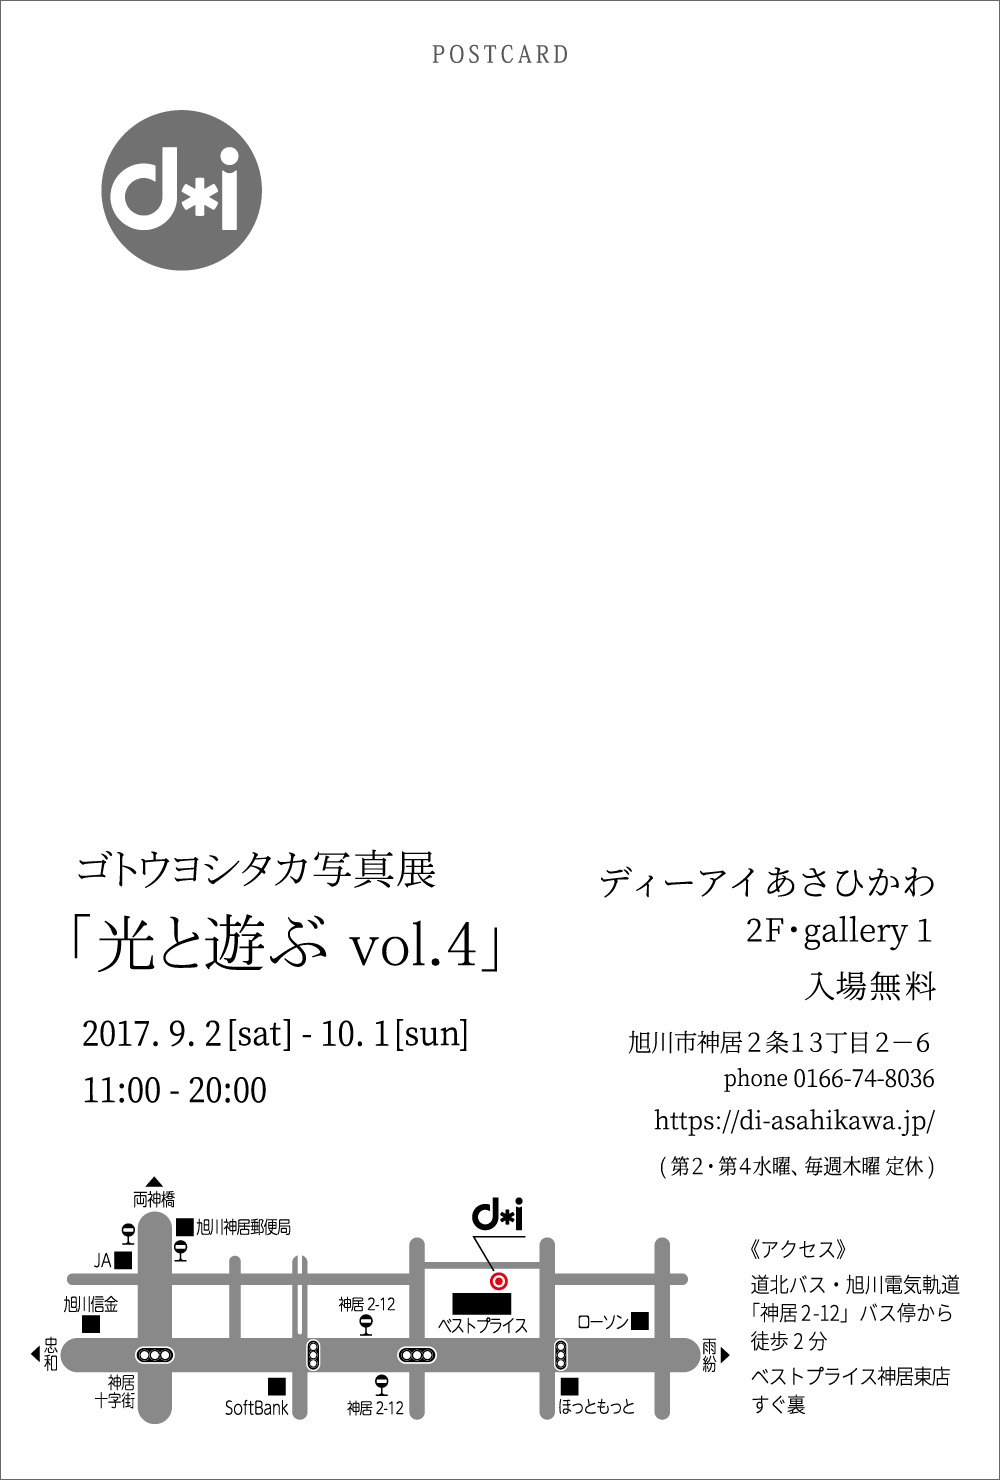 ゴトウヨシタカ写真展「光と遊ぶ vol.4」DM